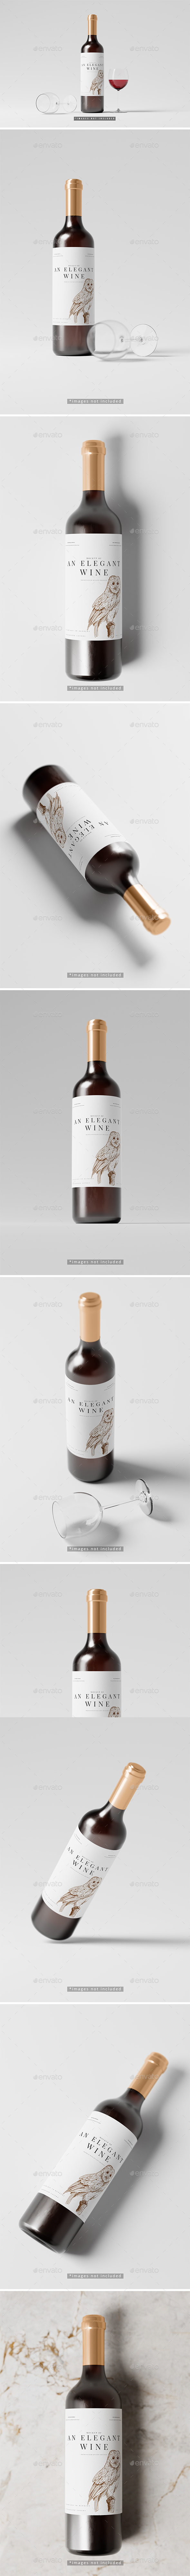 Elegant Red Wine Bottle Mockup Collection